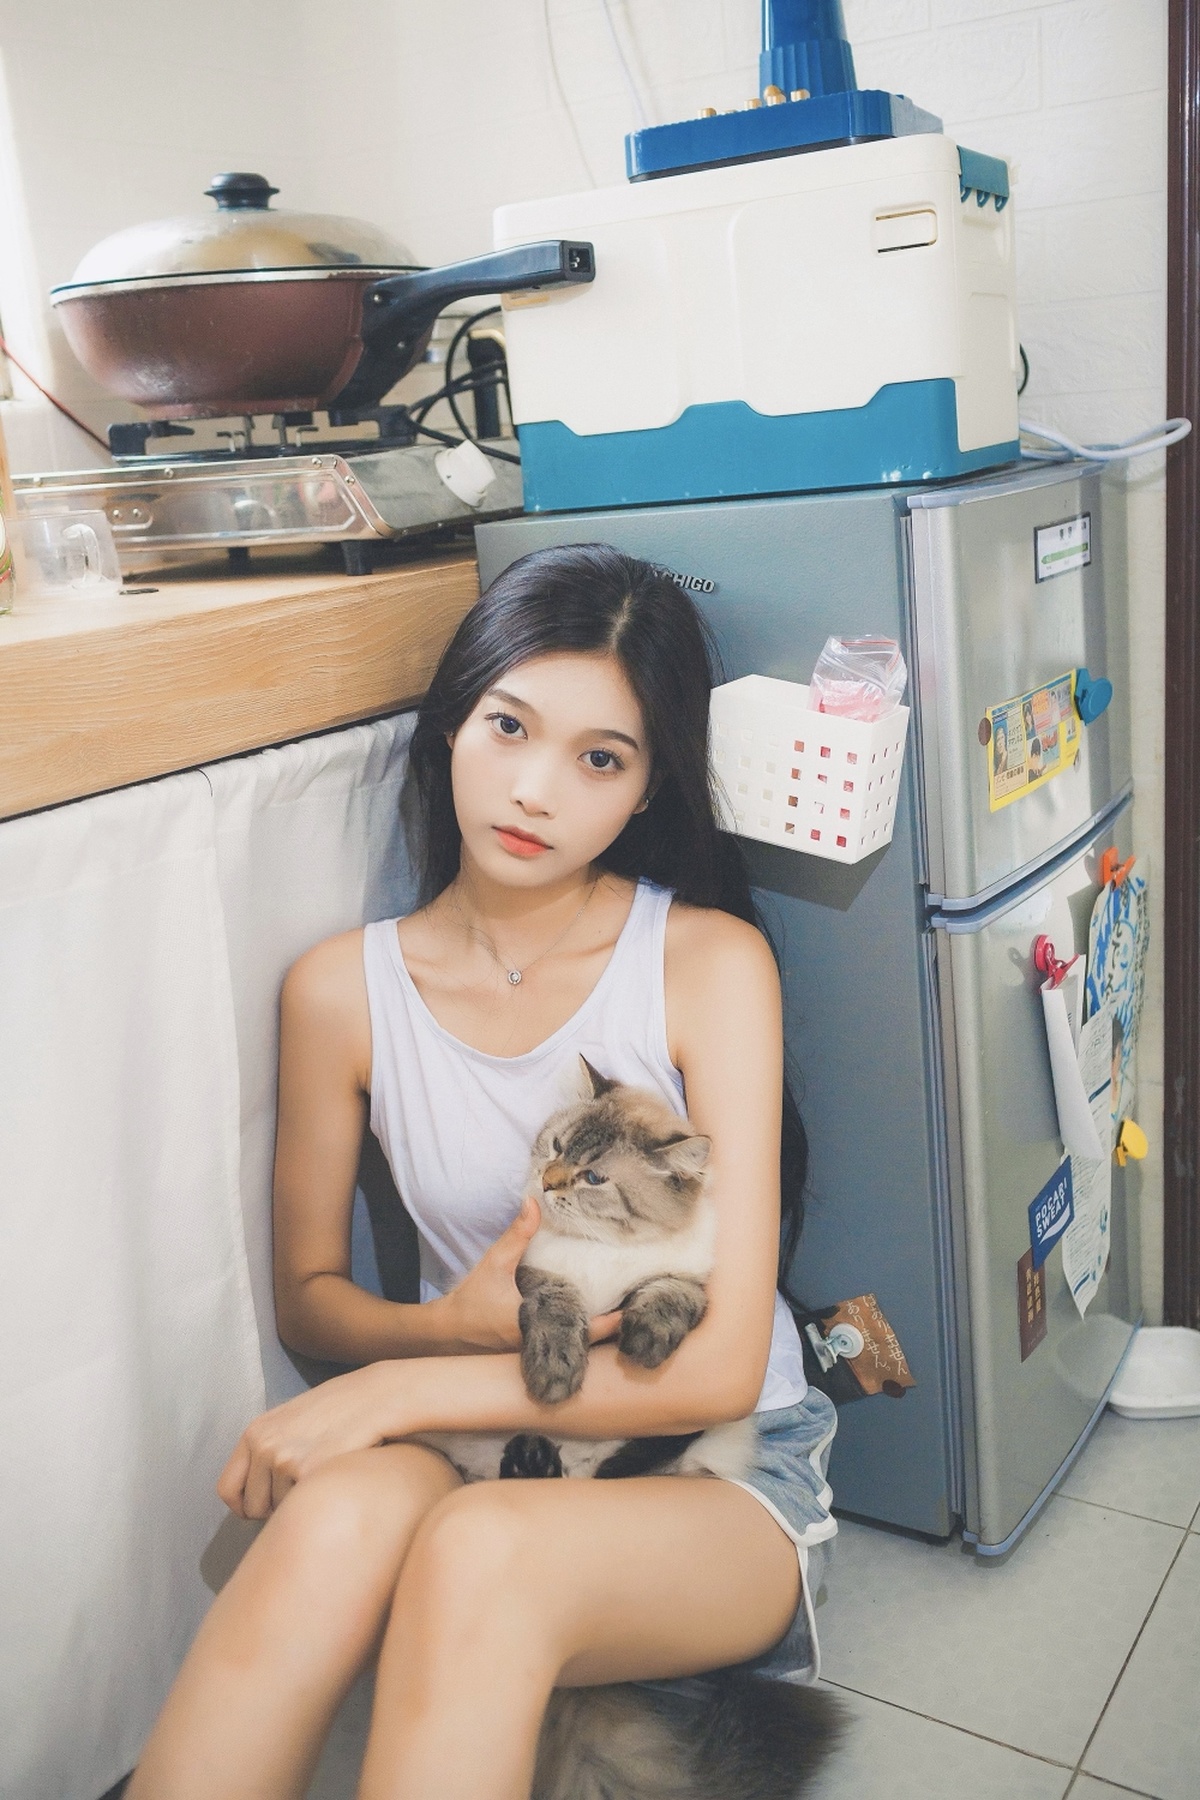 一位年轻女子抱着一只猫坐在冰箱前的购物袋上。